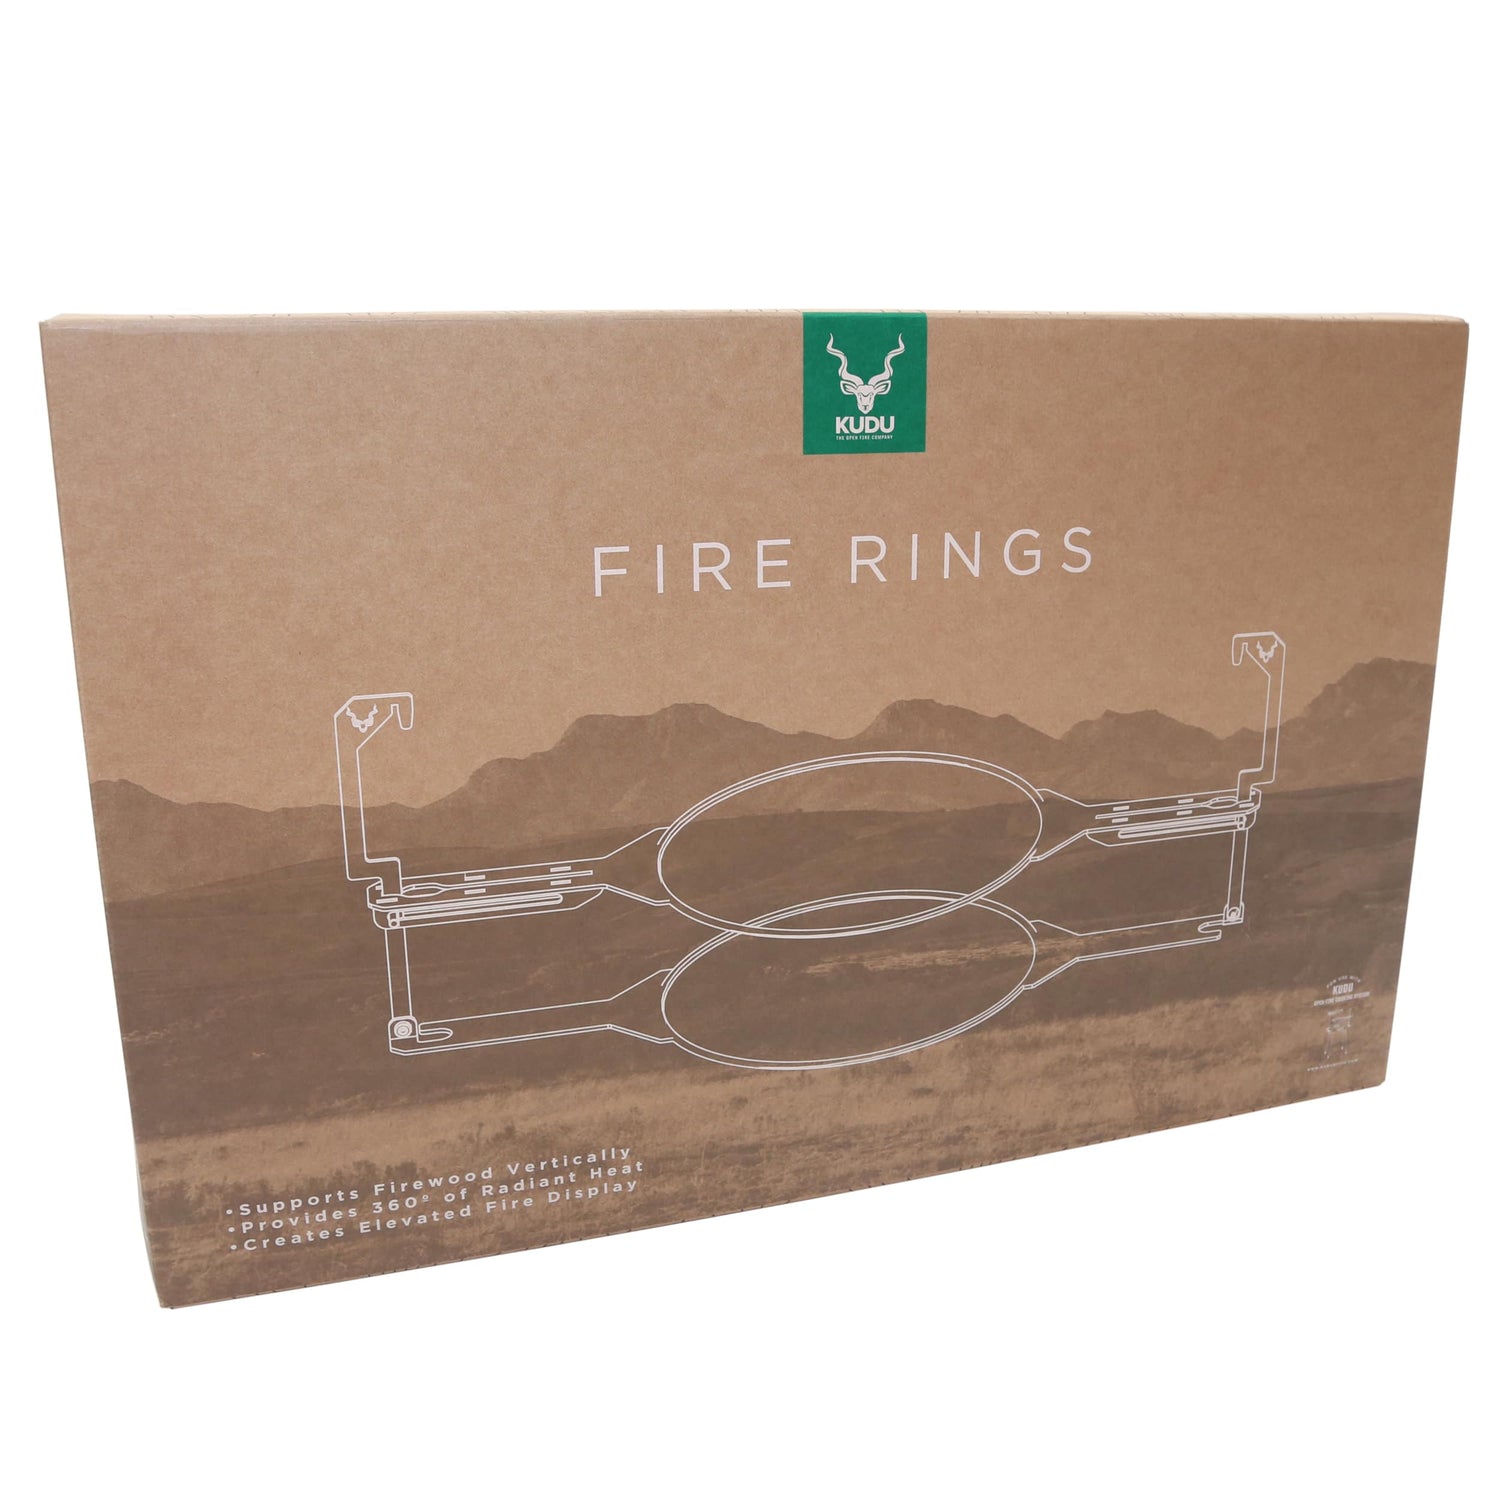 KUDU Fire Rings package